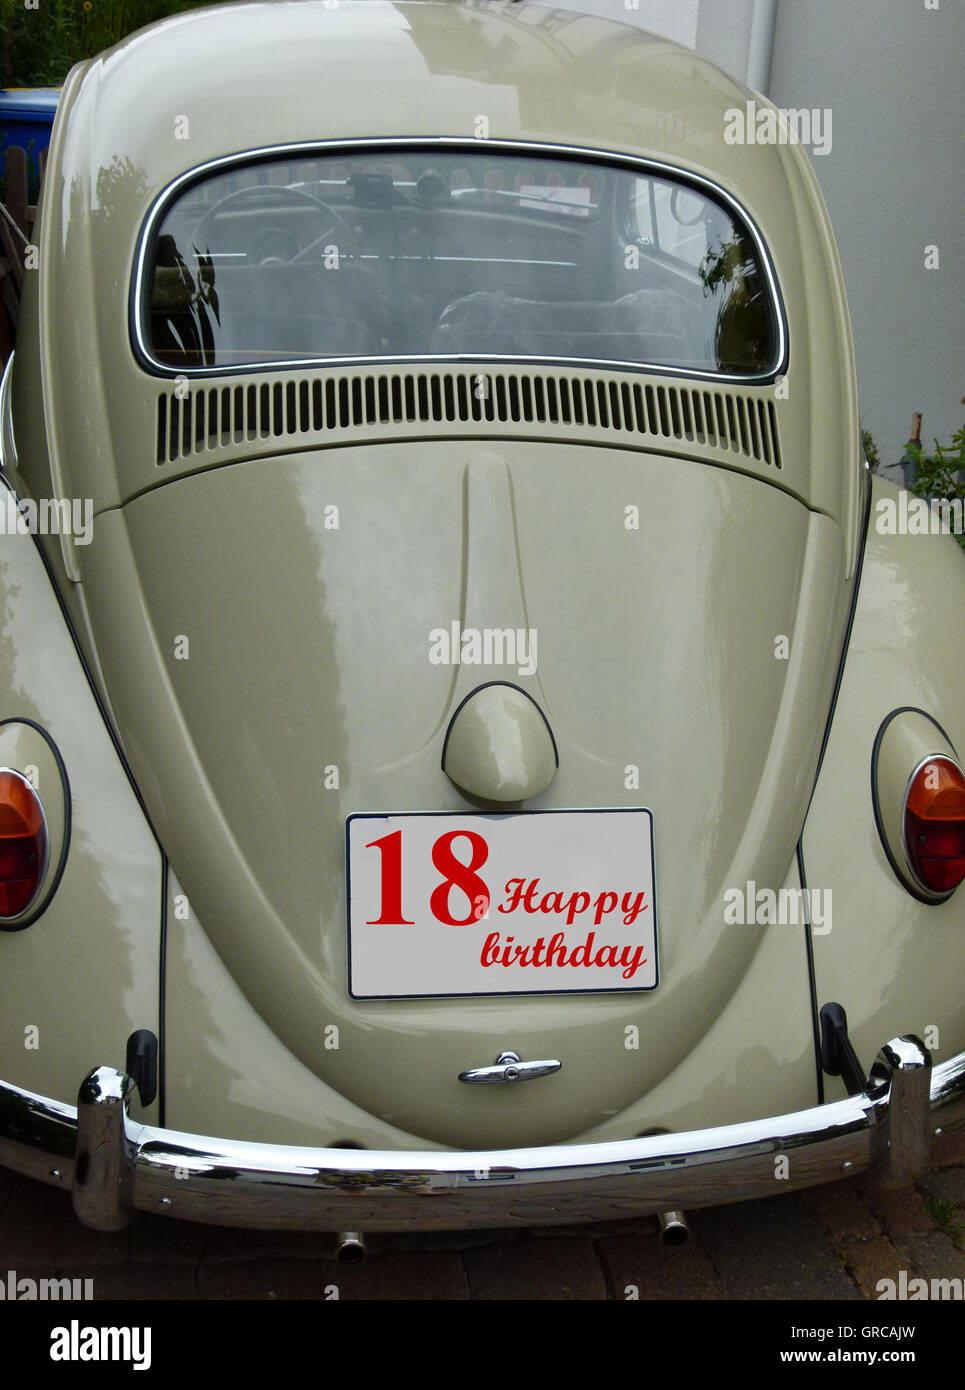 Einen alten Vw Käfer als Geschenk zum 18. Geburtstag Stockfotografie - Alamy